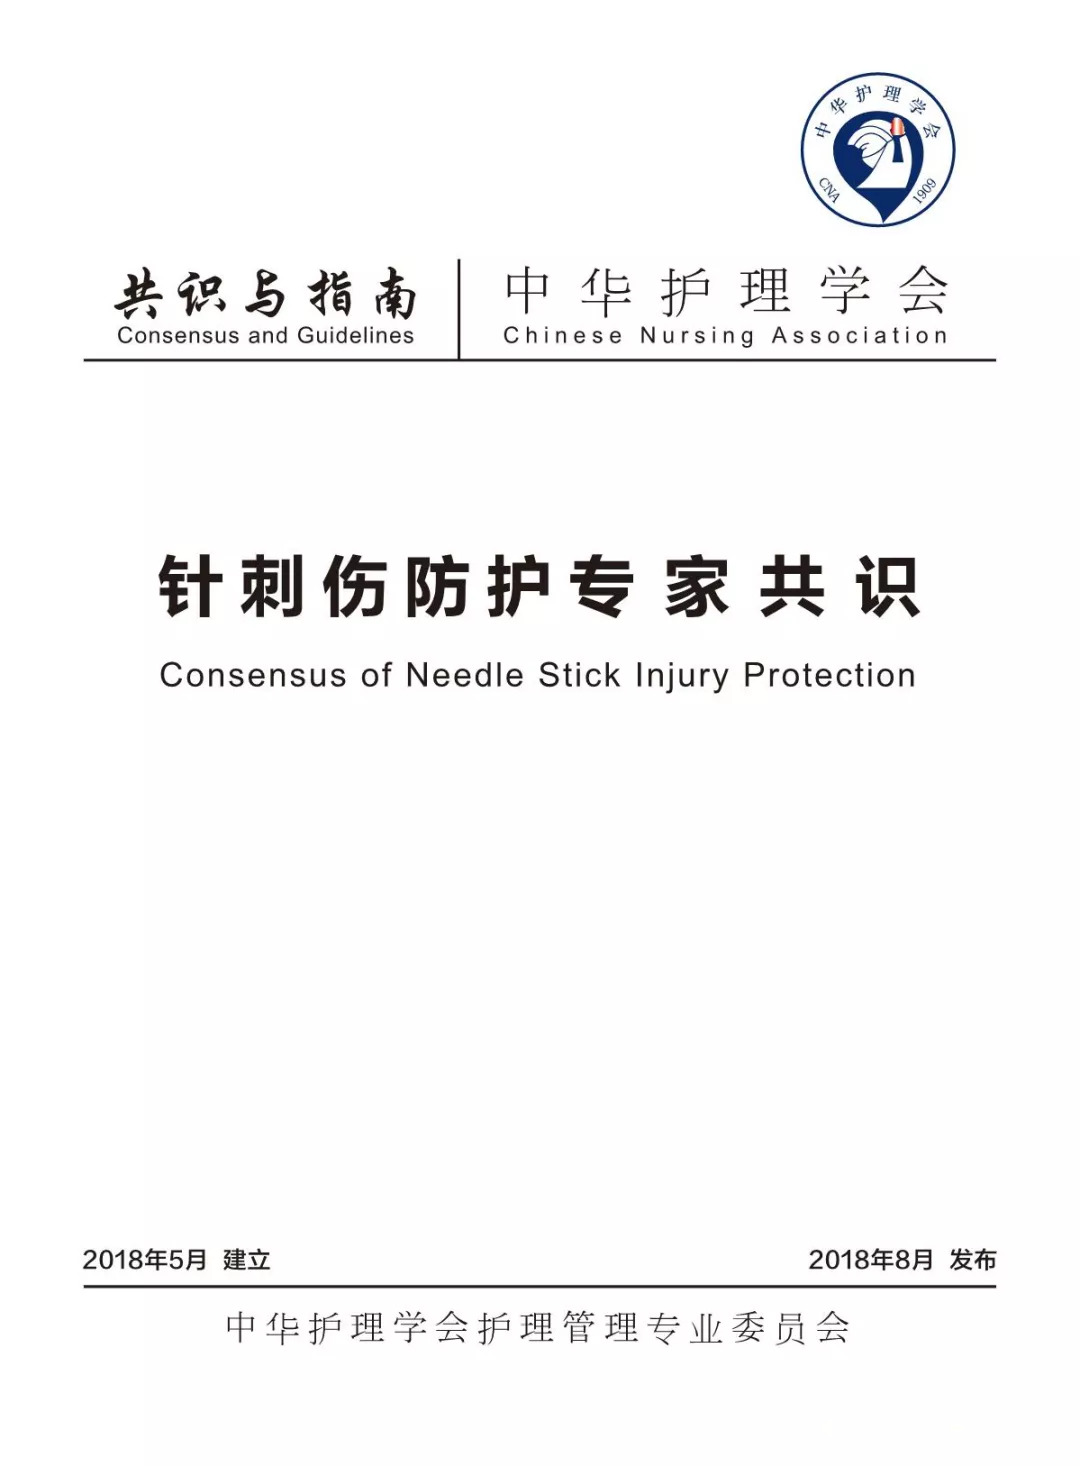 新指南丨《中国针刺伤防护专家共识》